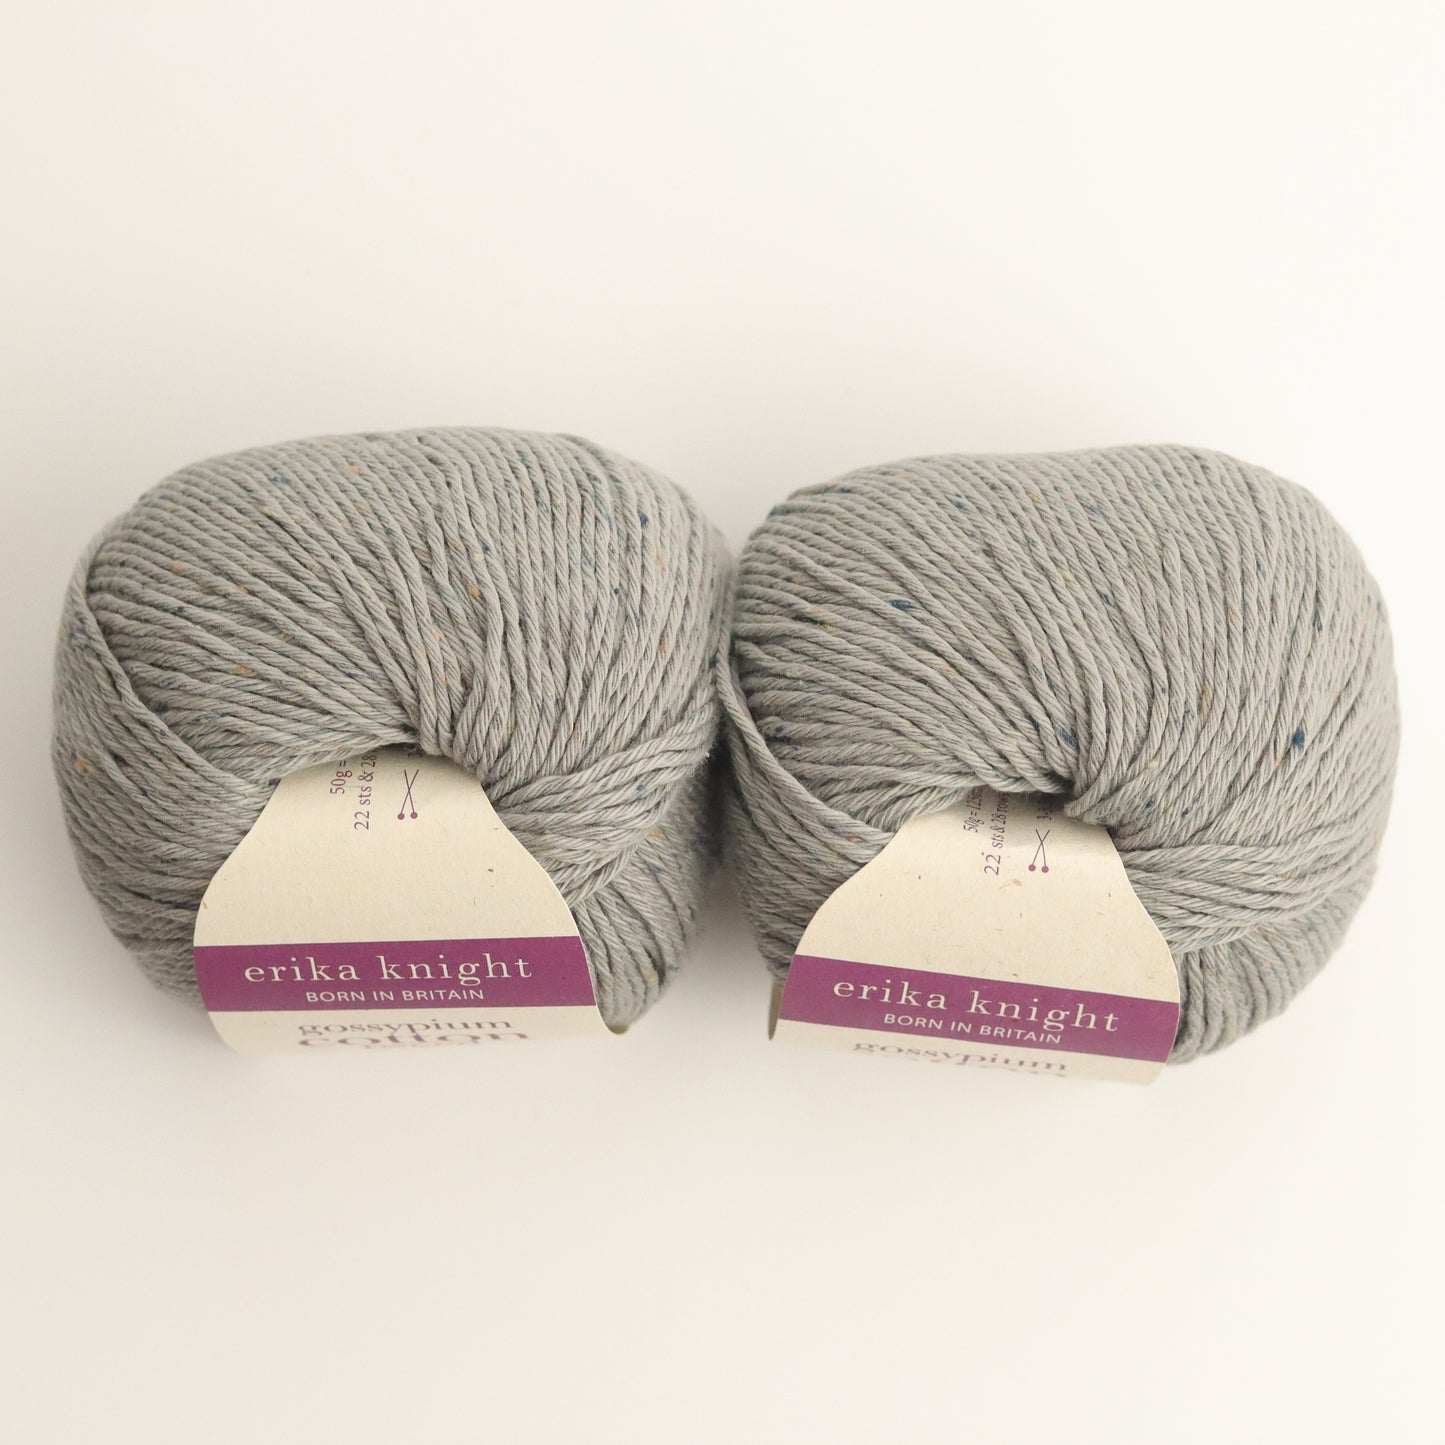 Erika Knight Yarns Gossypium Cotton Tweed | Granit | Cotton Blend Yarn